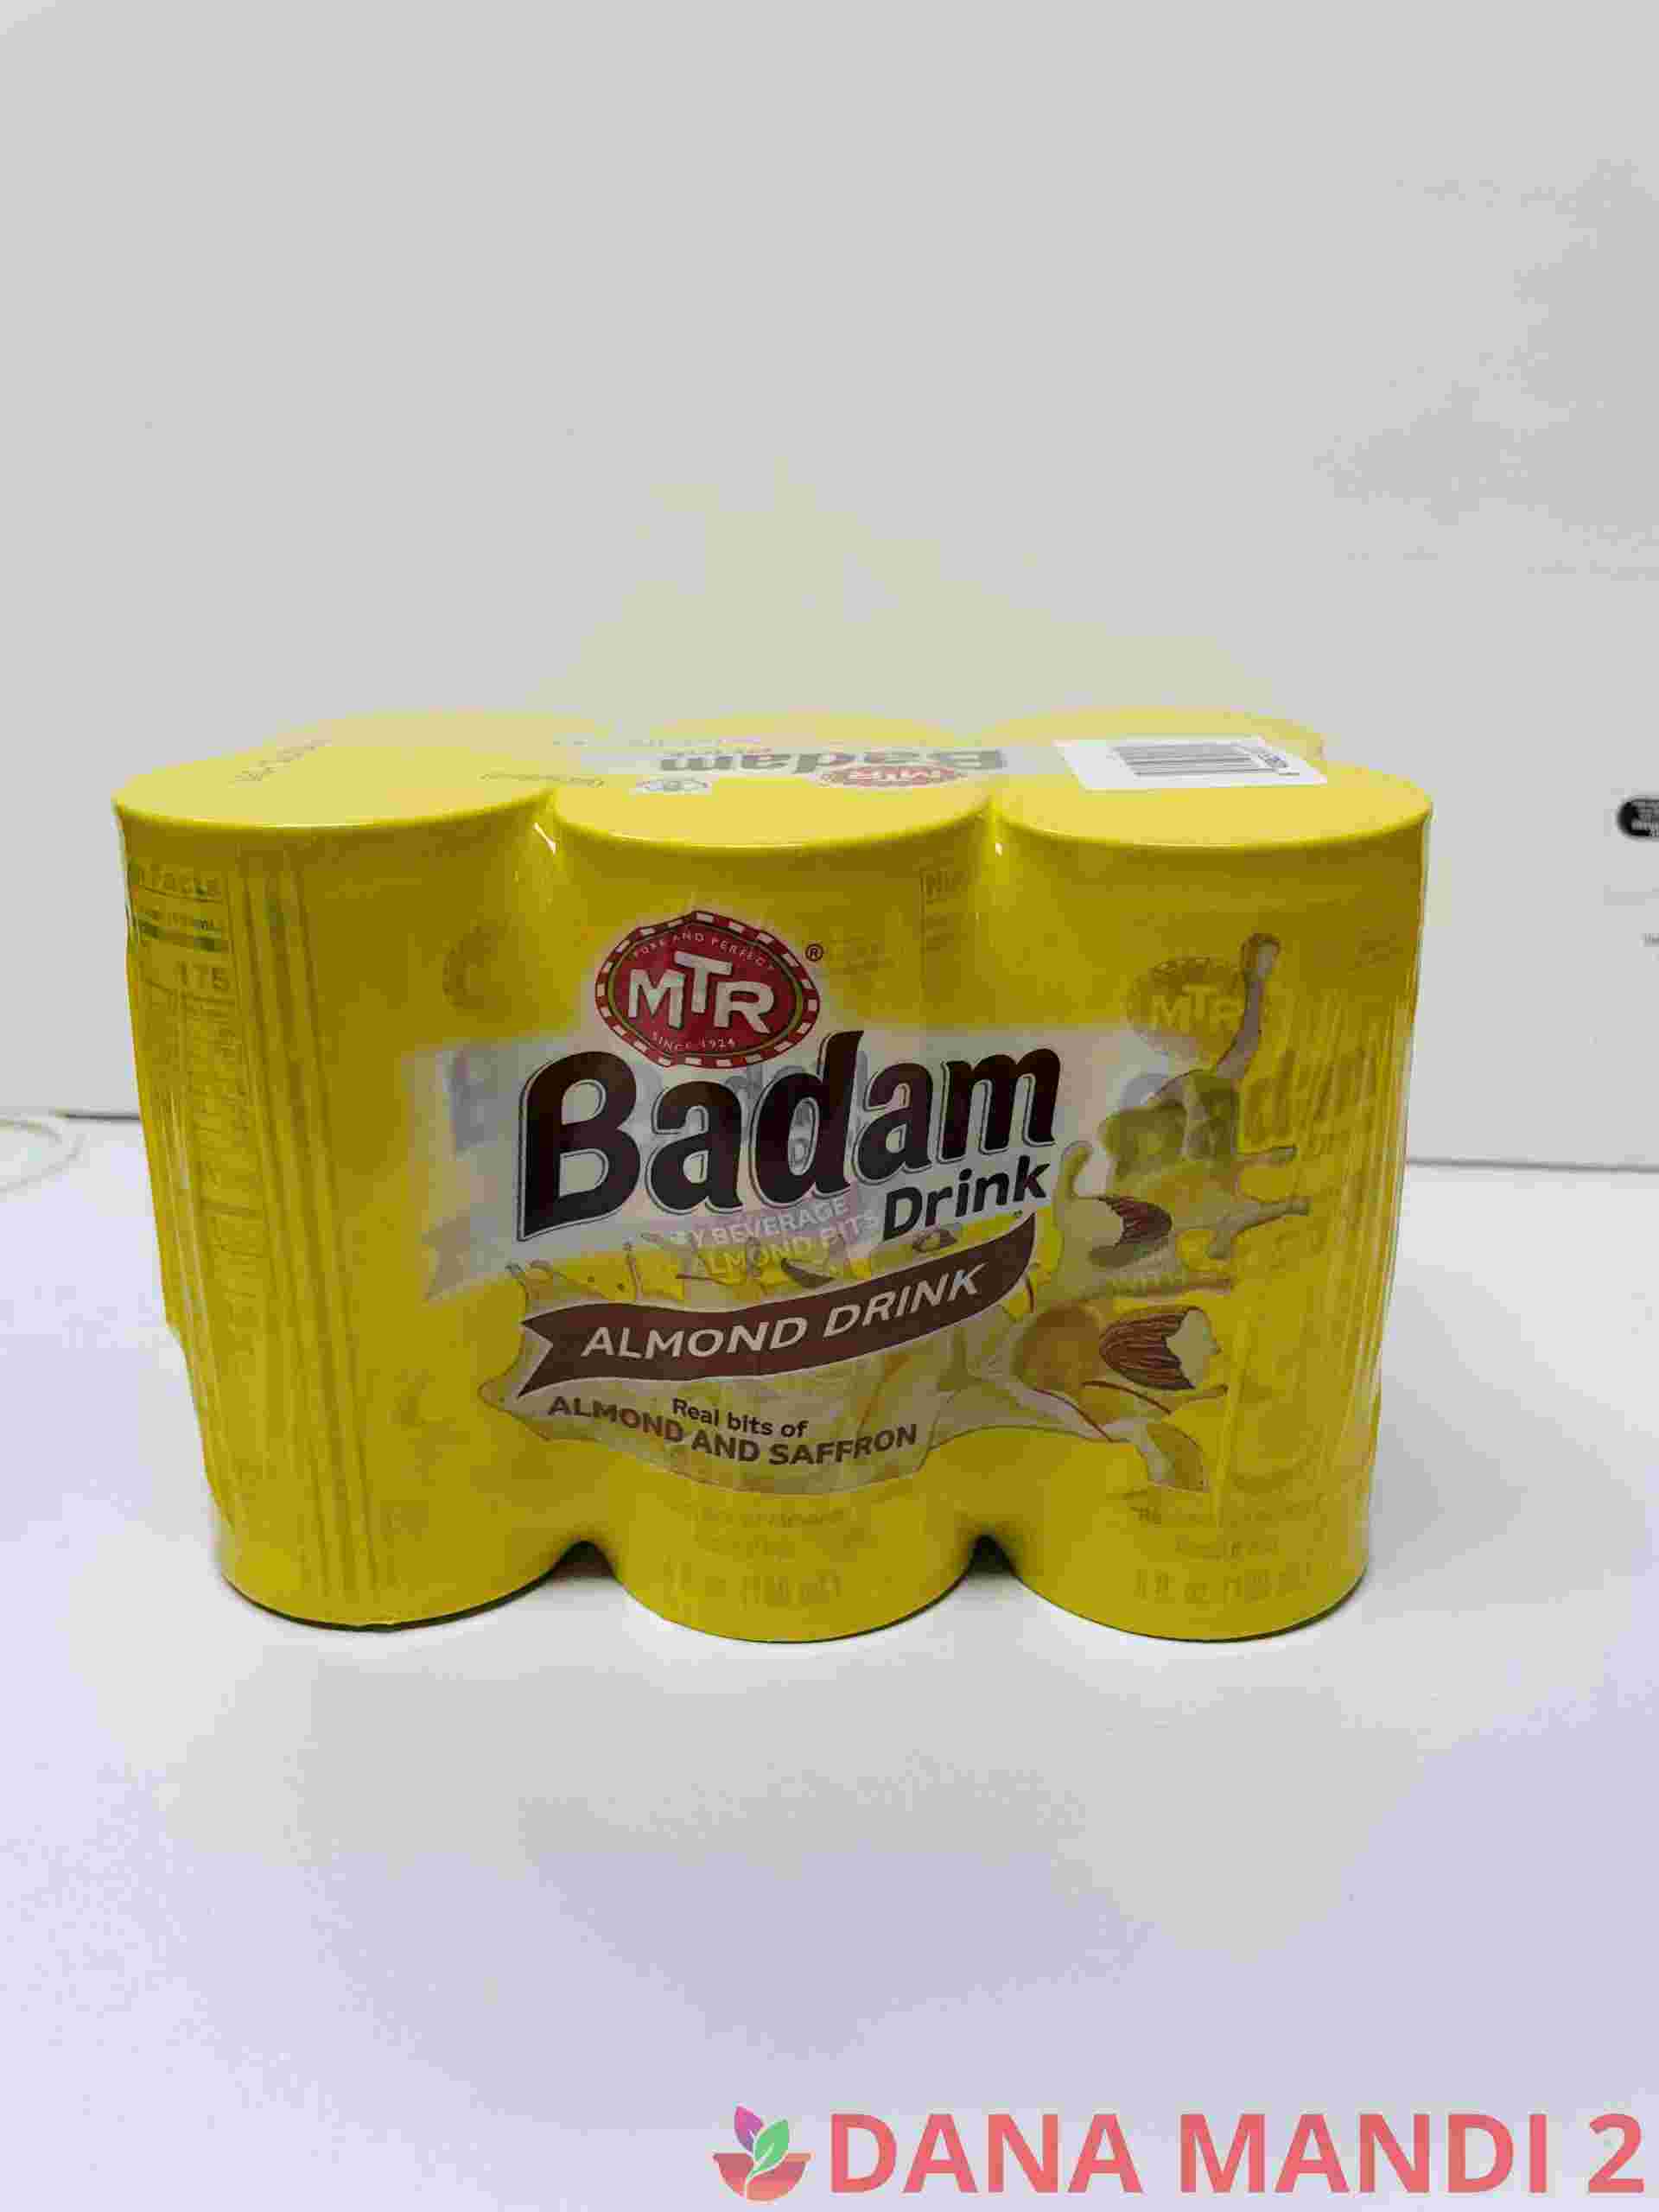 Mtr Badam Drink Almond Drink 6 In A Pack